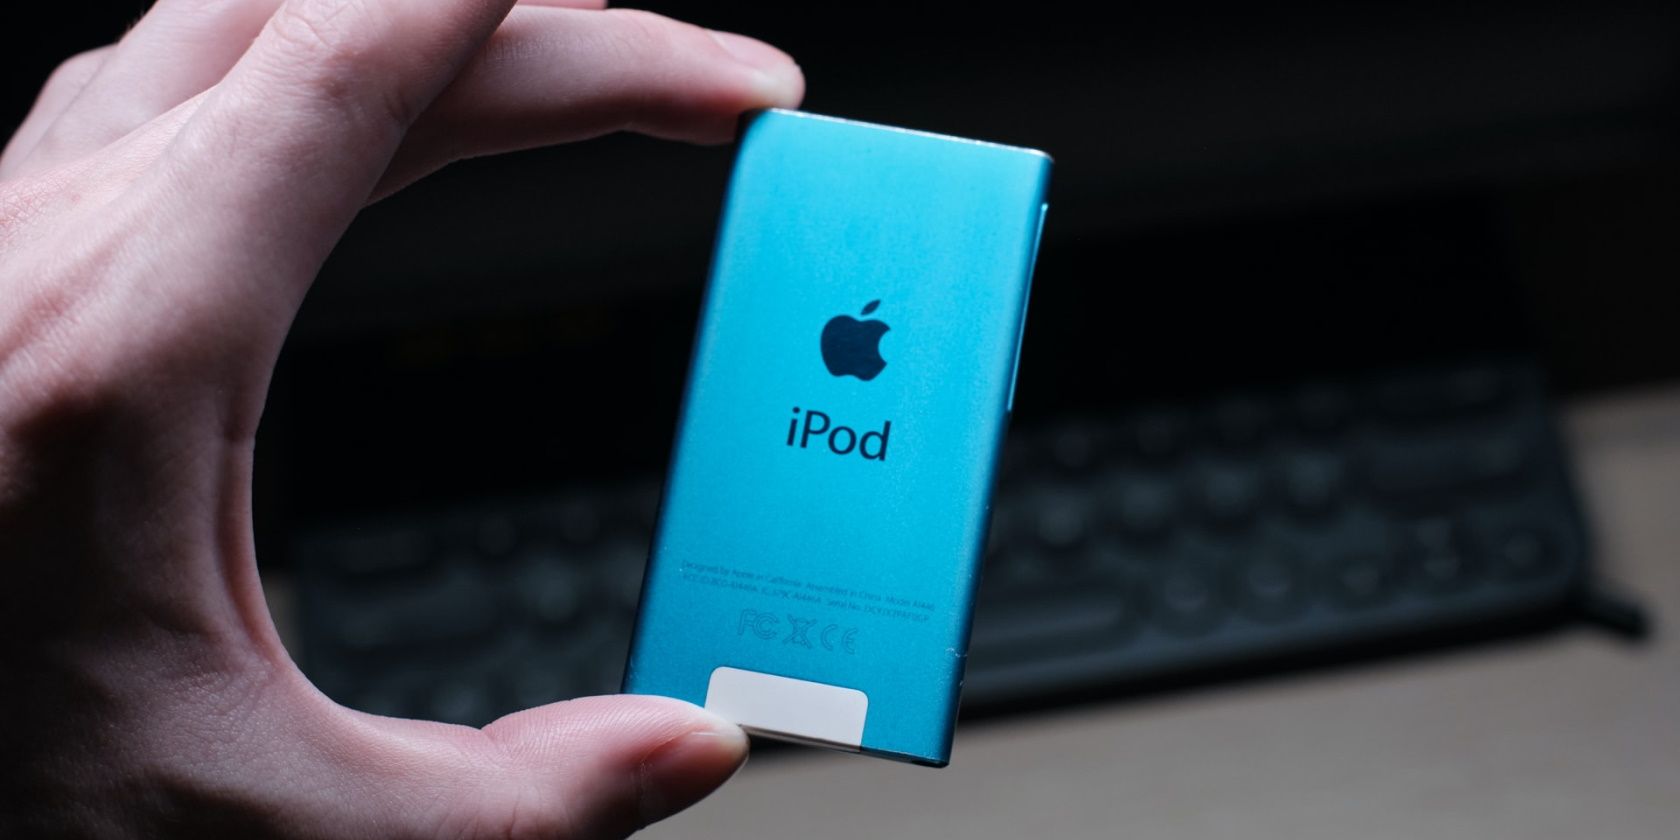 iPod Nano in blue color